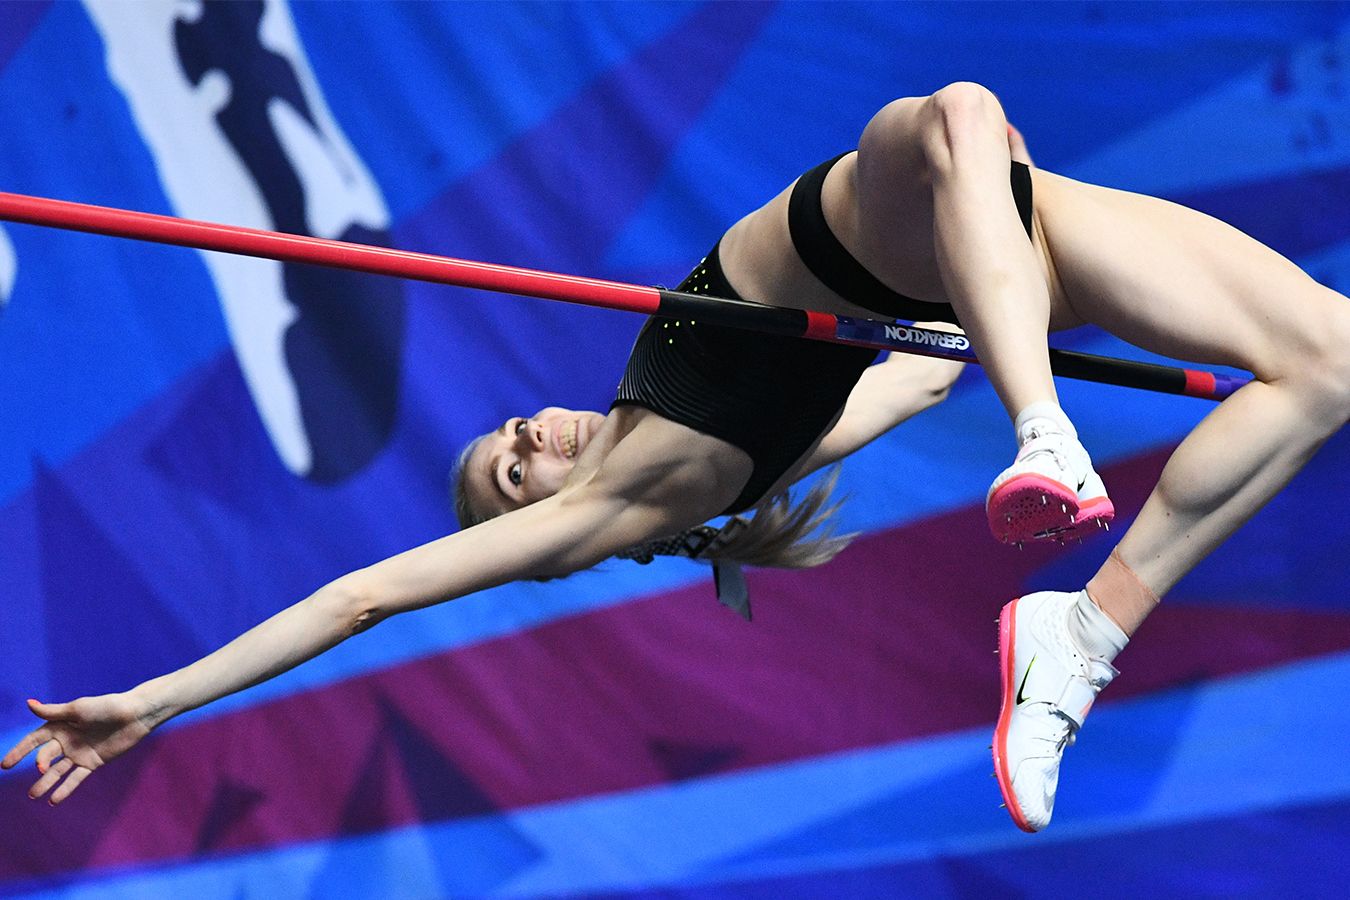 Стоп, а как же санкции?! Российская прыгунья выиграла зарубежный турнир под своим флагом